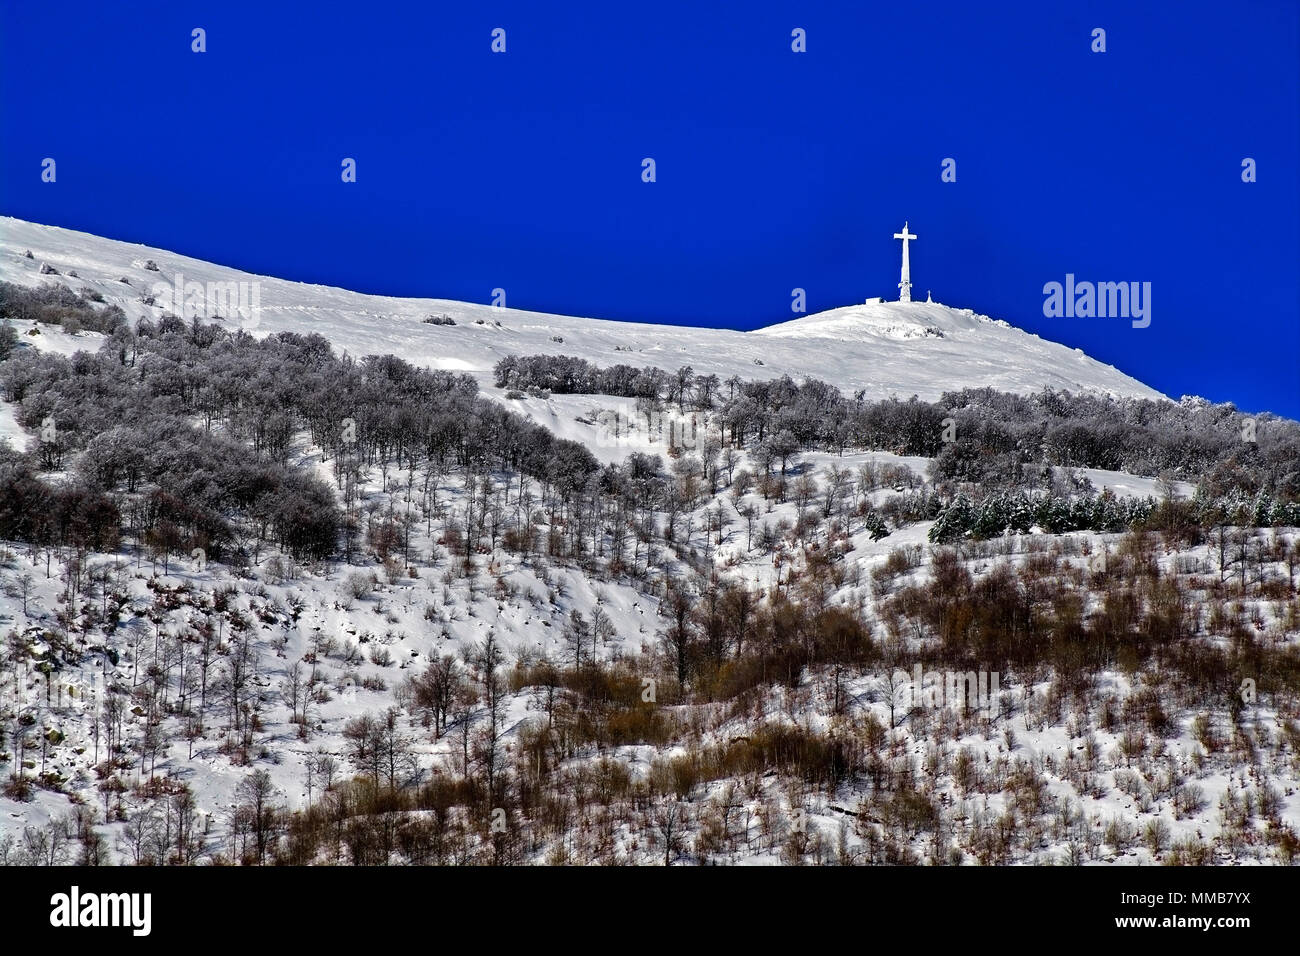 Vista della cima del monte Mindino, con la sua elevata (25 m + 2 di base in cemento) croce nella neve. Alpi marittime,in provincia di Cuneo, Piemonte, Italia del Nord. Foto Stock